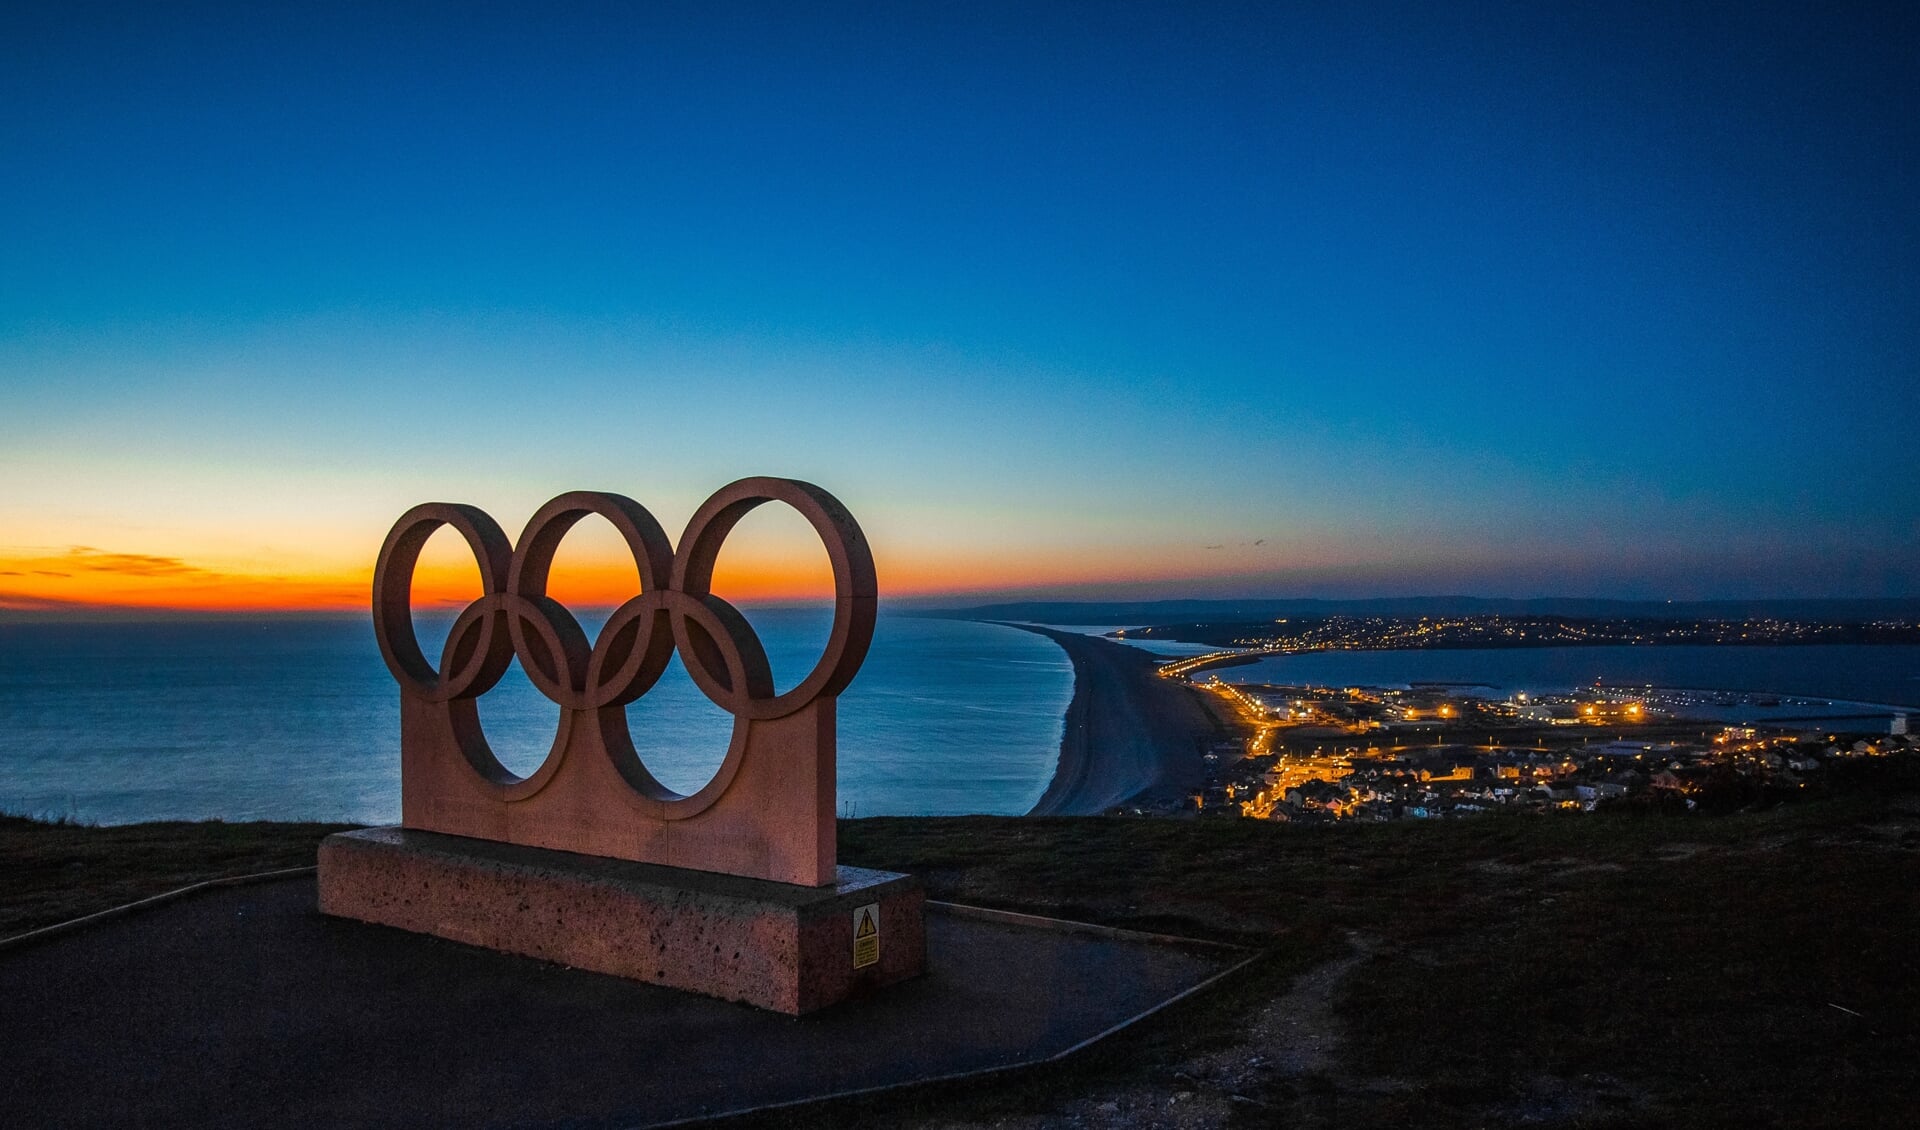 Een beeld van het logo van de Olympische Spelen met op de achtergrond de zonsondergang en uitzicht op een kustlijn en stad